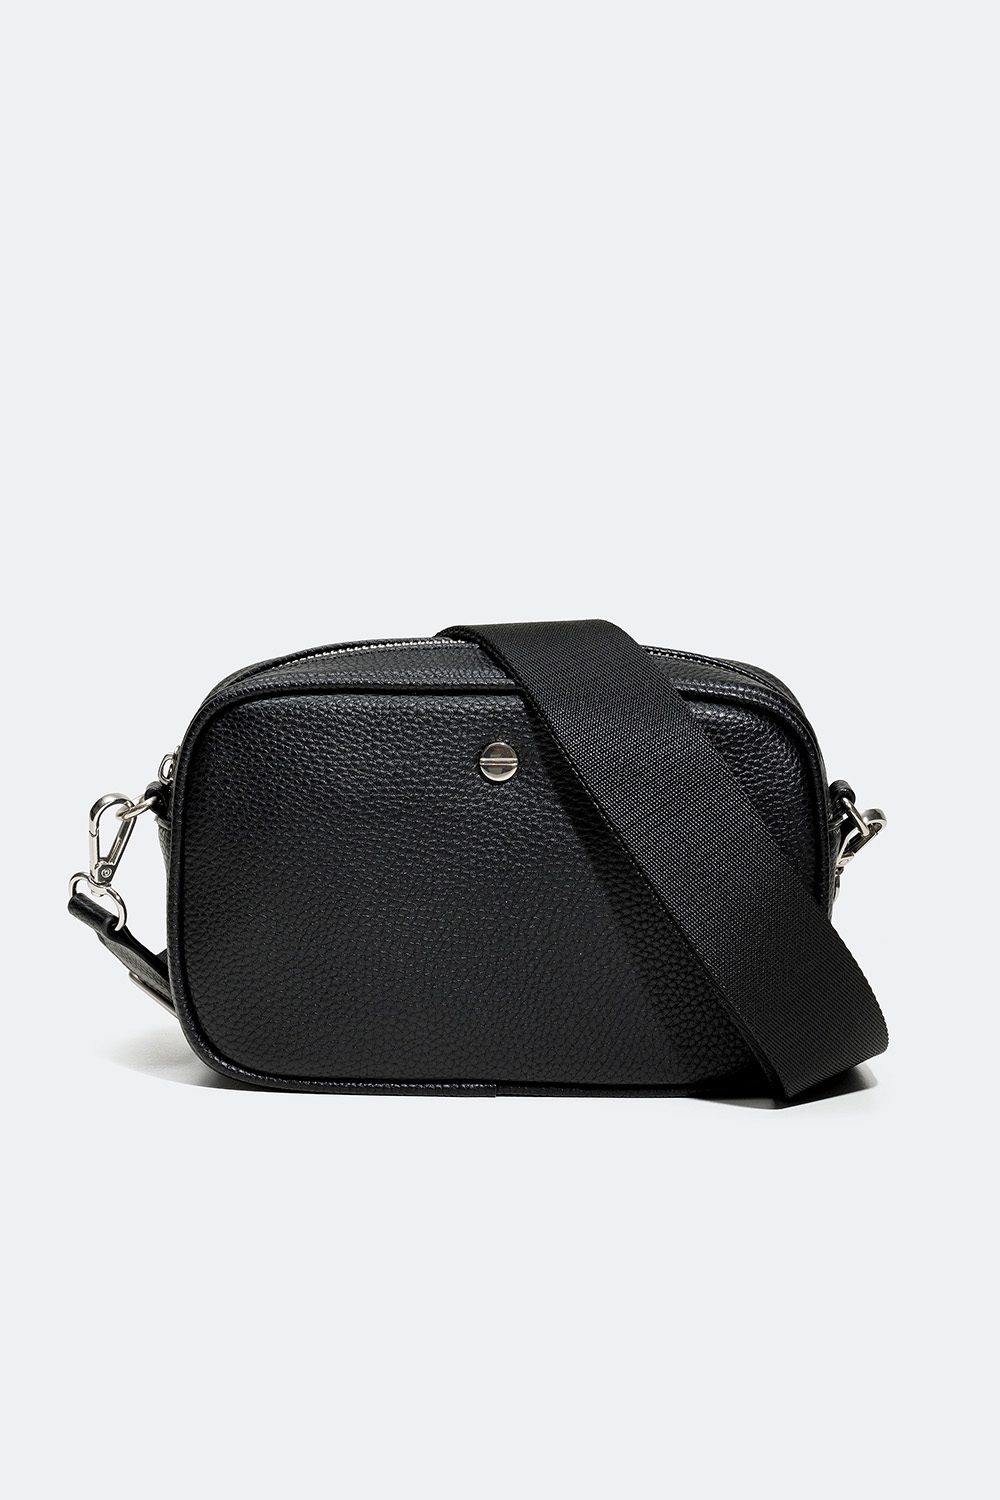 Musta cross-body-laukku, jossa leveä olkahihna ryhmässä Laukut / Olkalaukut @ Glitter (172000849000)